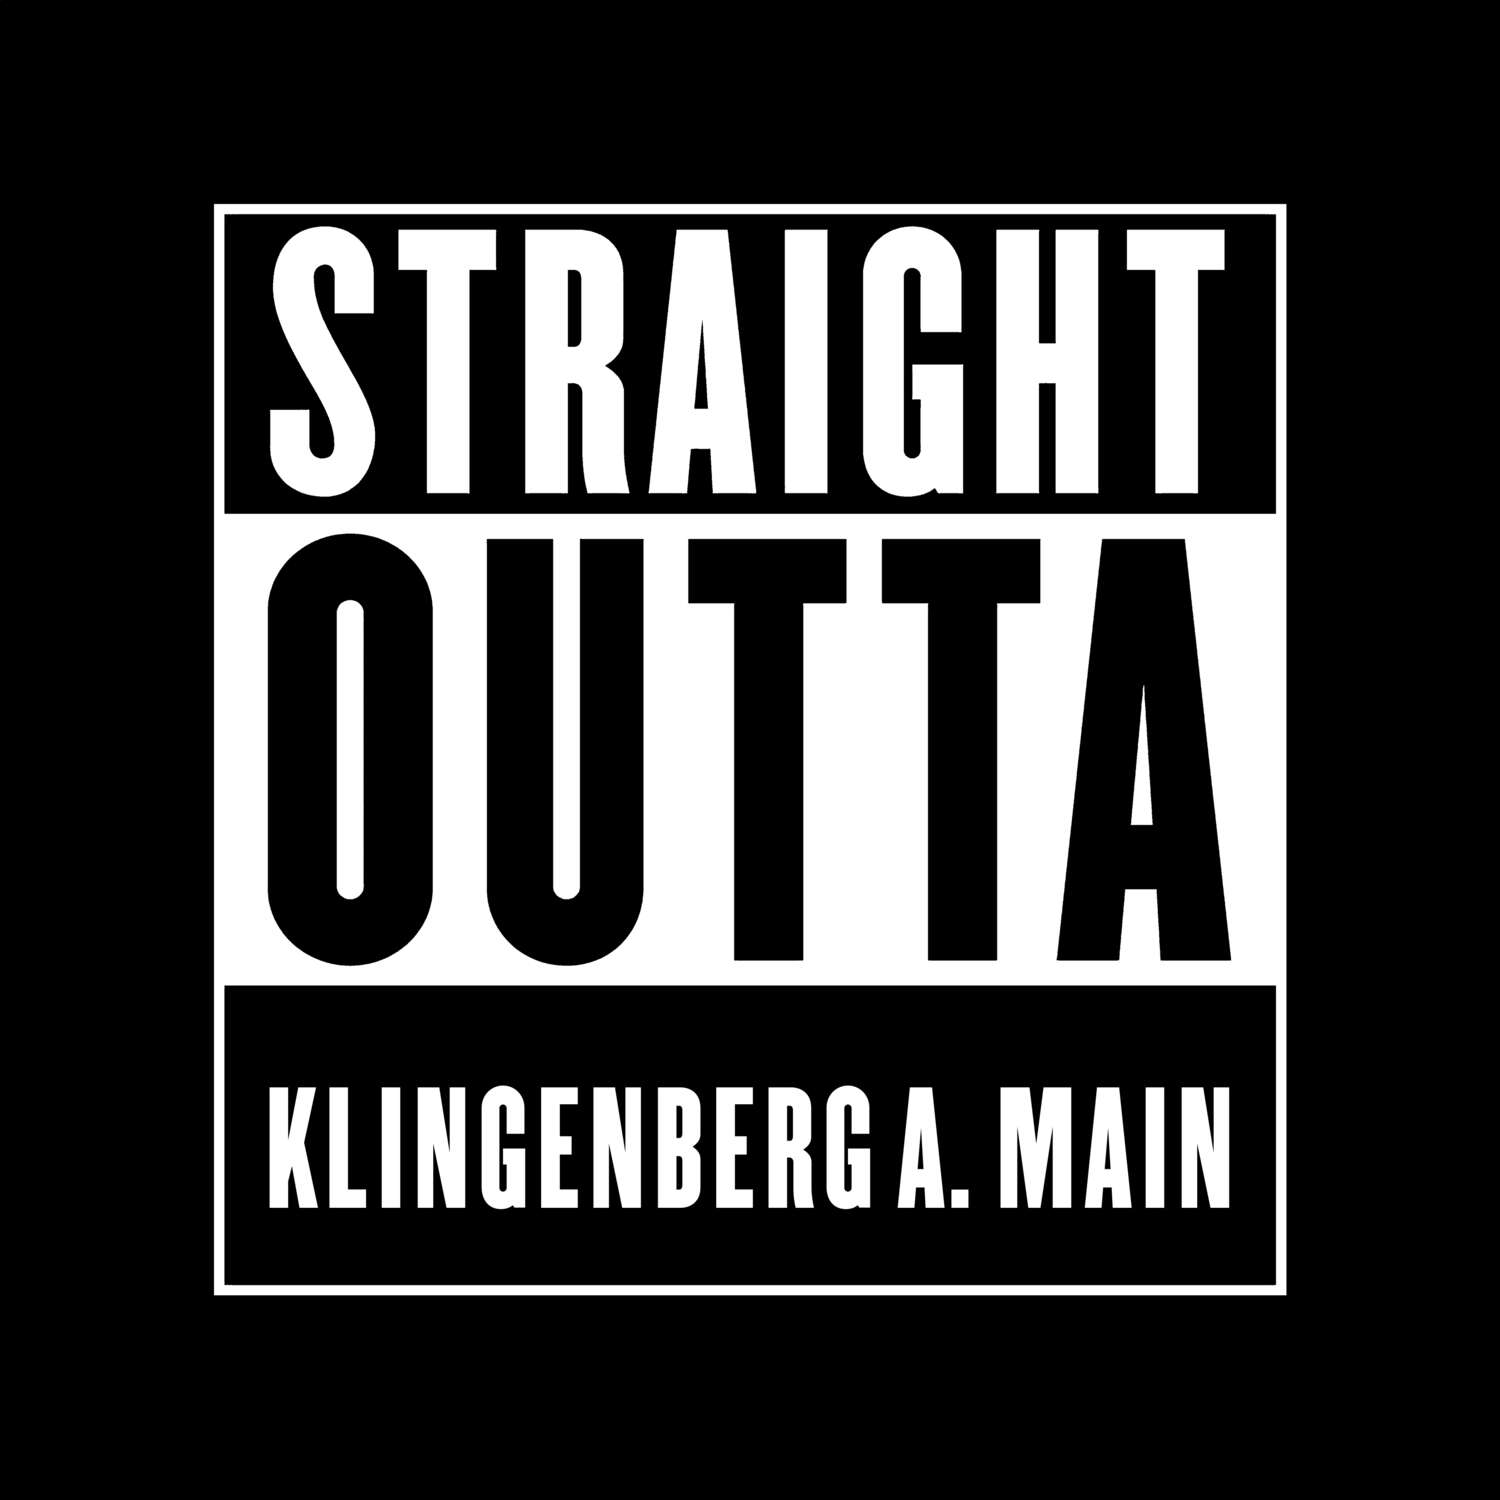 Klingenberg a. Main T-Shirt »Straight Outta«